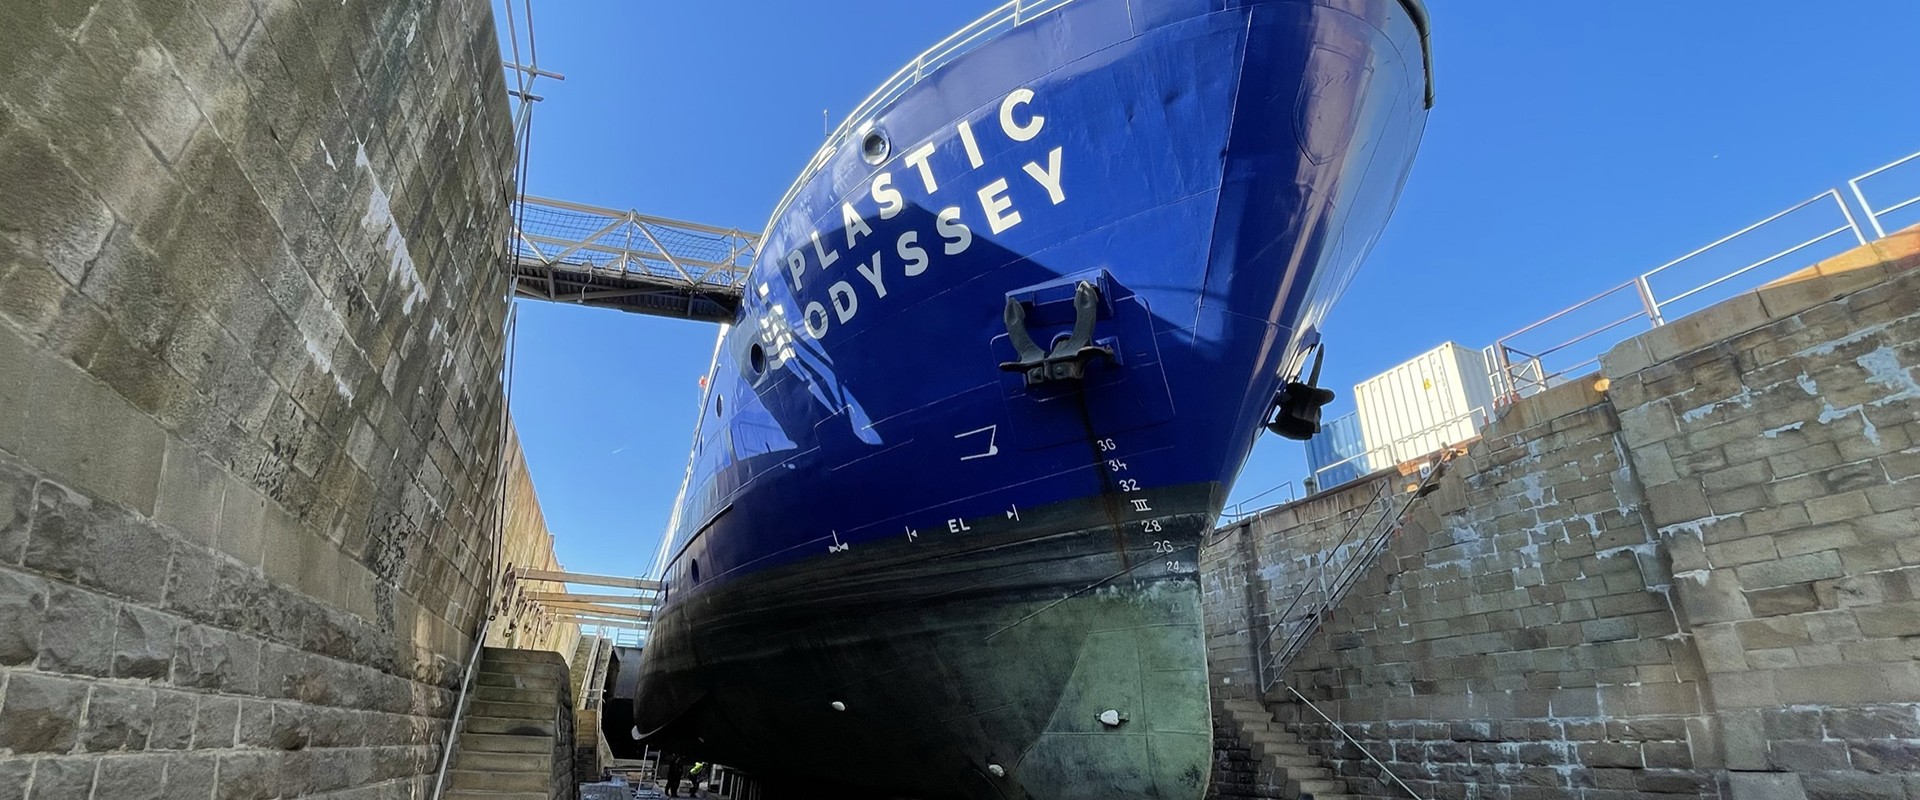 El Plastic Odyssey en dique de reparación naval